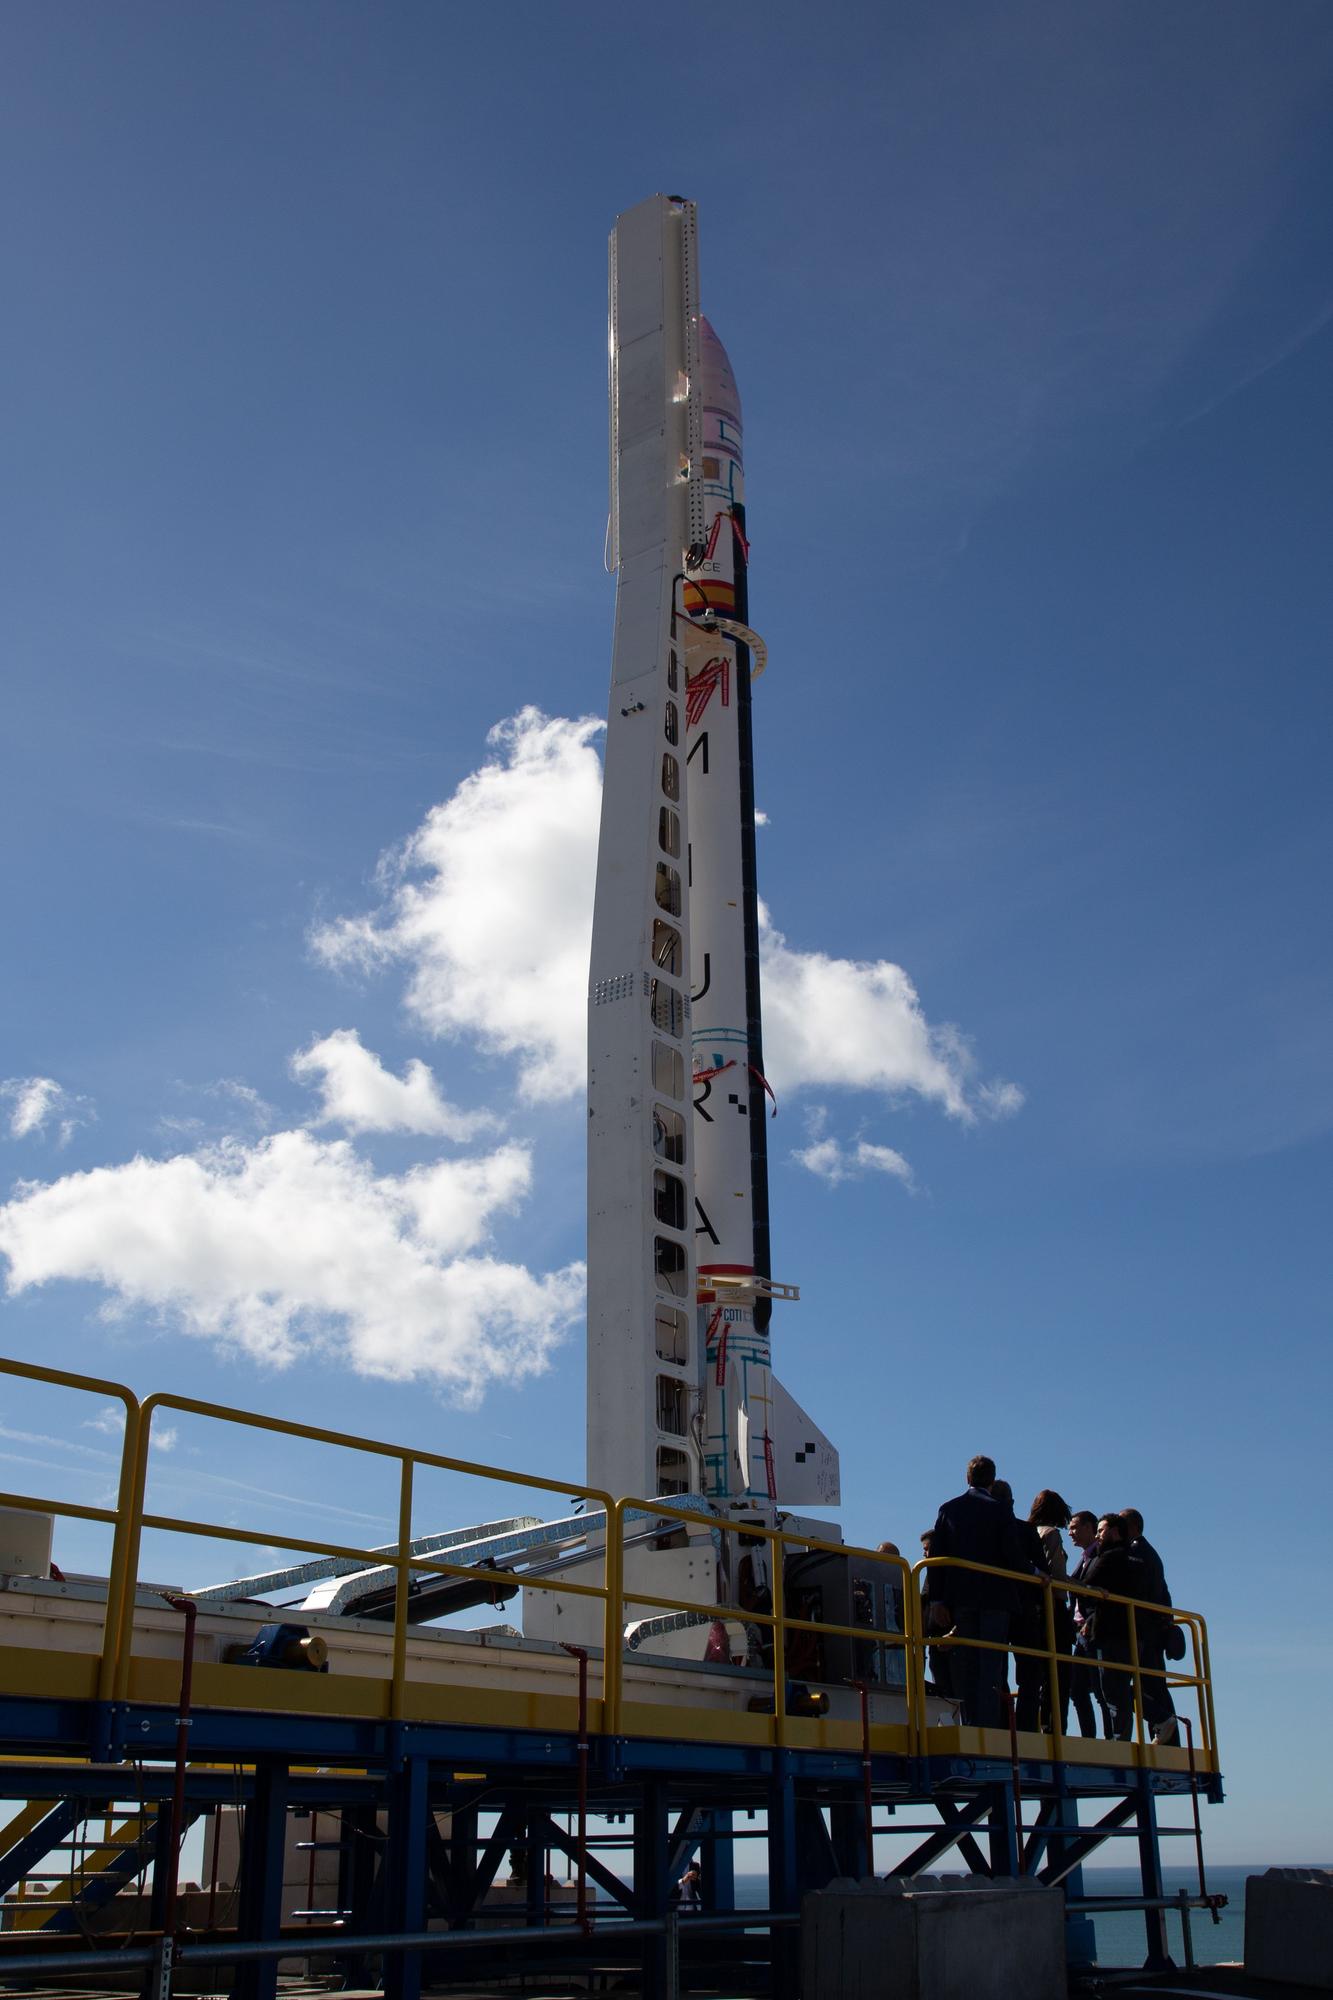 Pedro Sánchez confía en que el cohete de Elche pondrá al país a la vanguardia aeroespacial